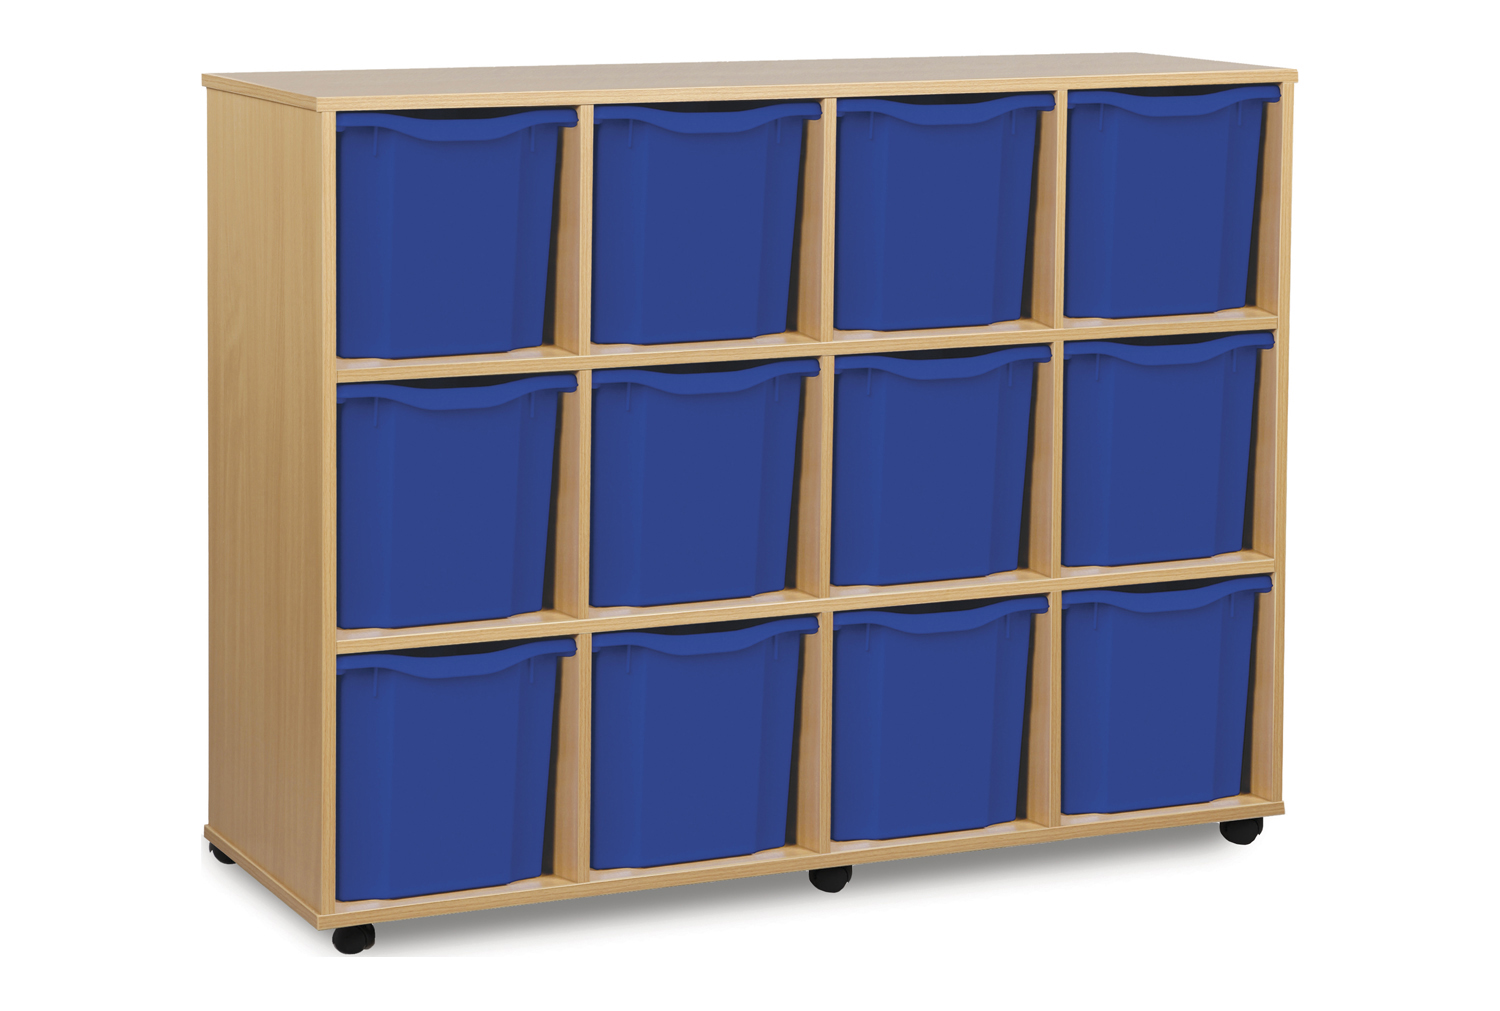 12 Jumbo Classroom Tray Storage Unit, Blue Classroom Trays